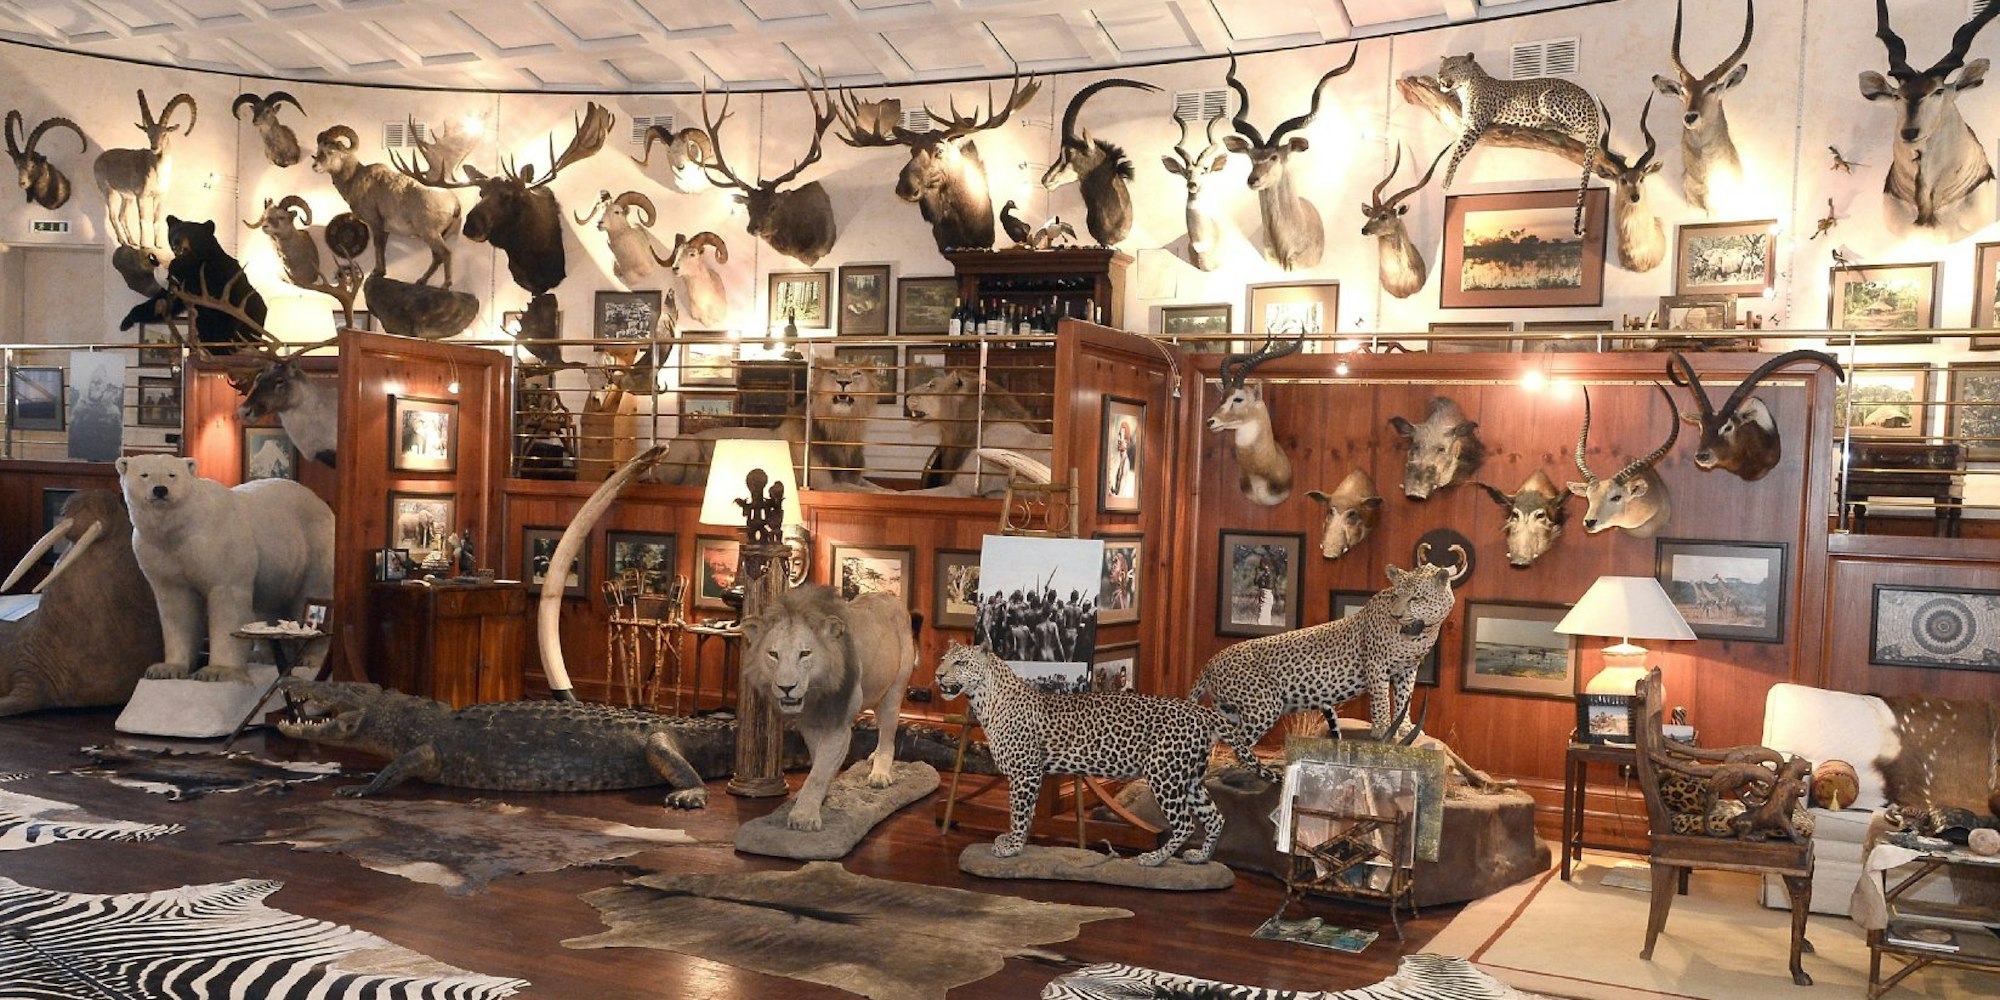 Auf 200 Quadratmetern hat Bellinger Löwen, Leoparden, Eisbären und andere präparierte Tiere in seinem Privatmuseum ausgestellt.